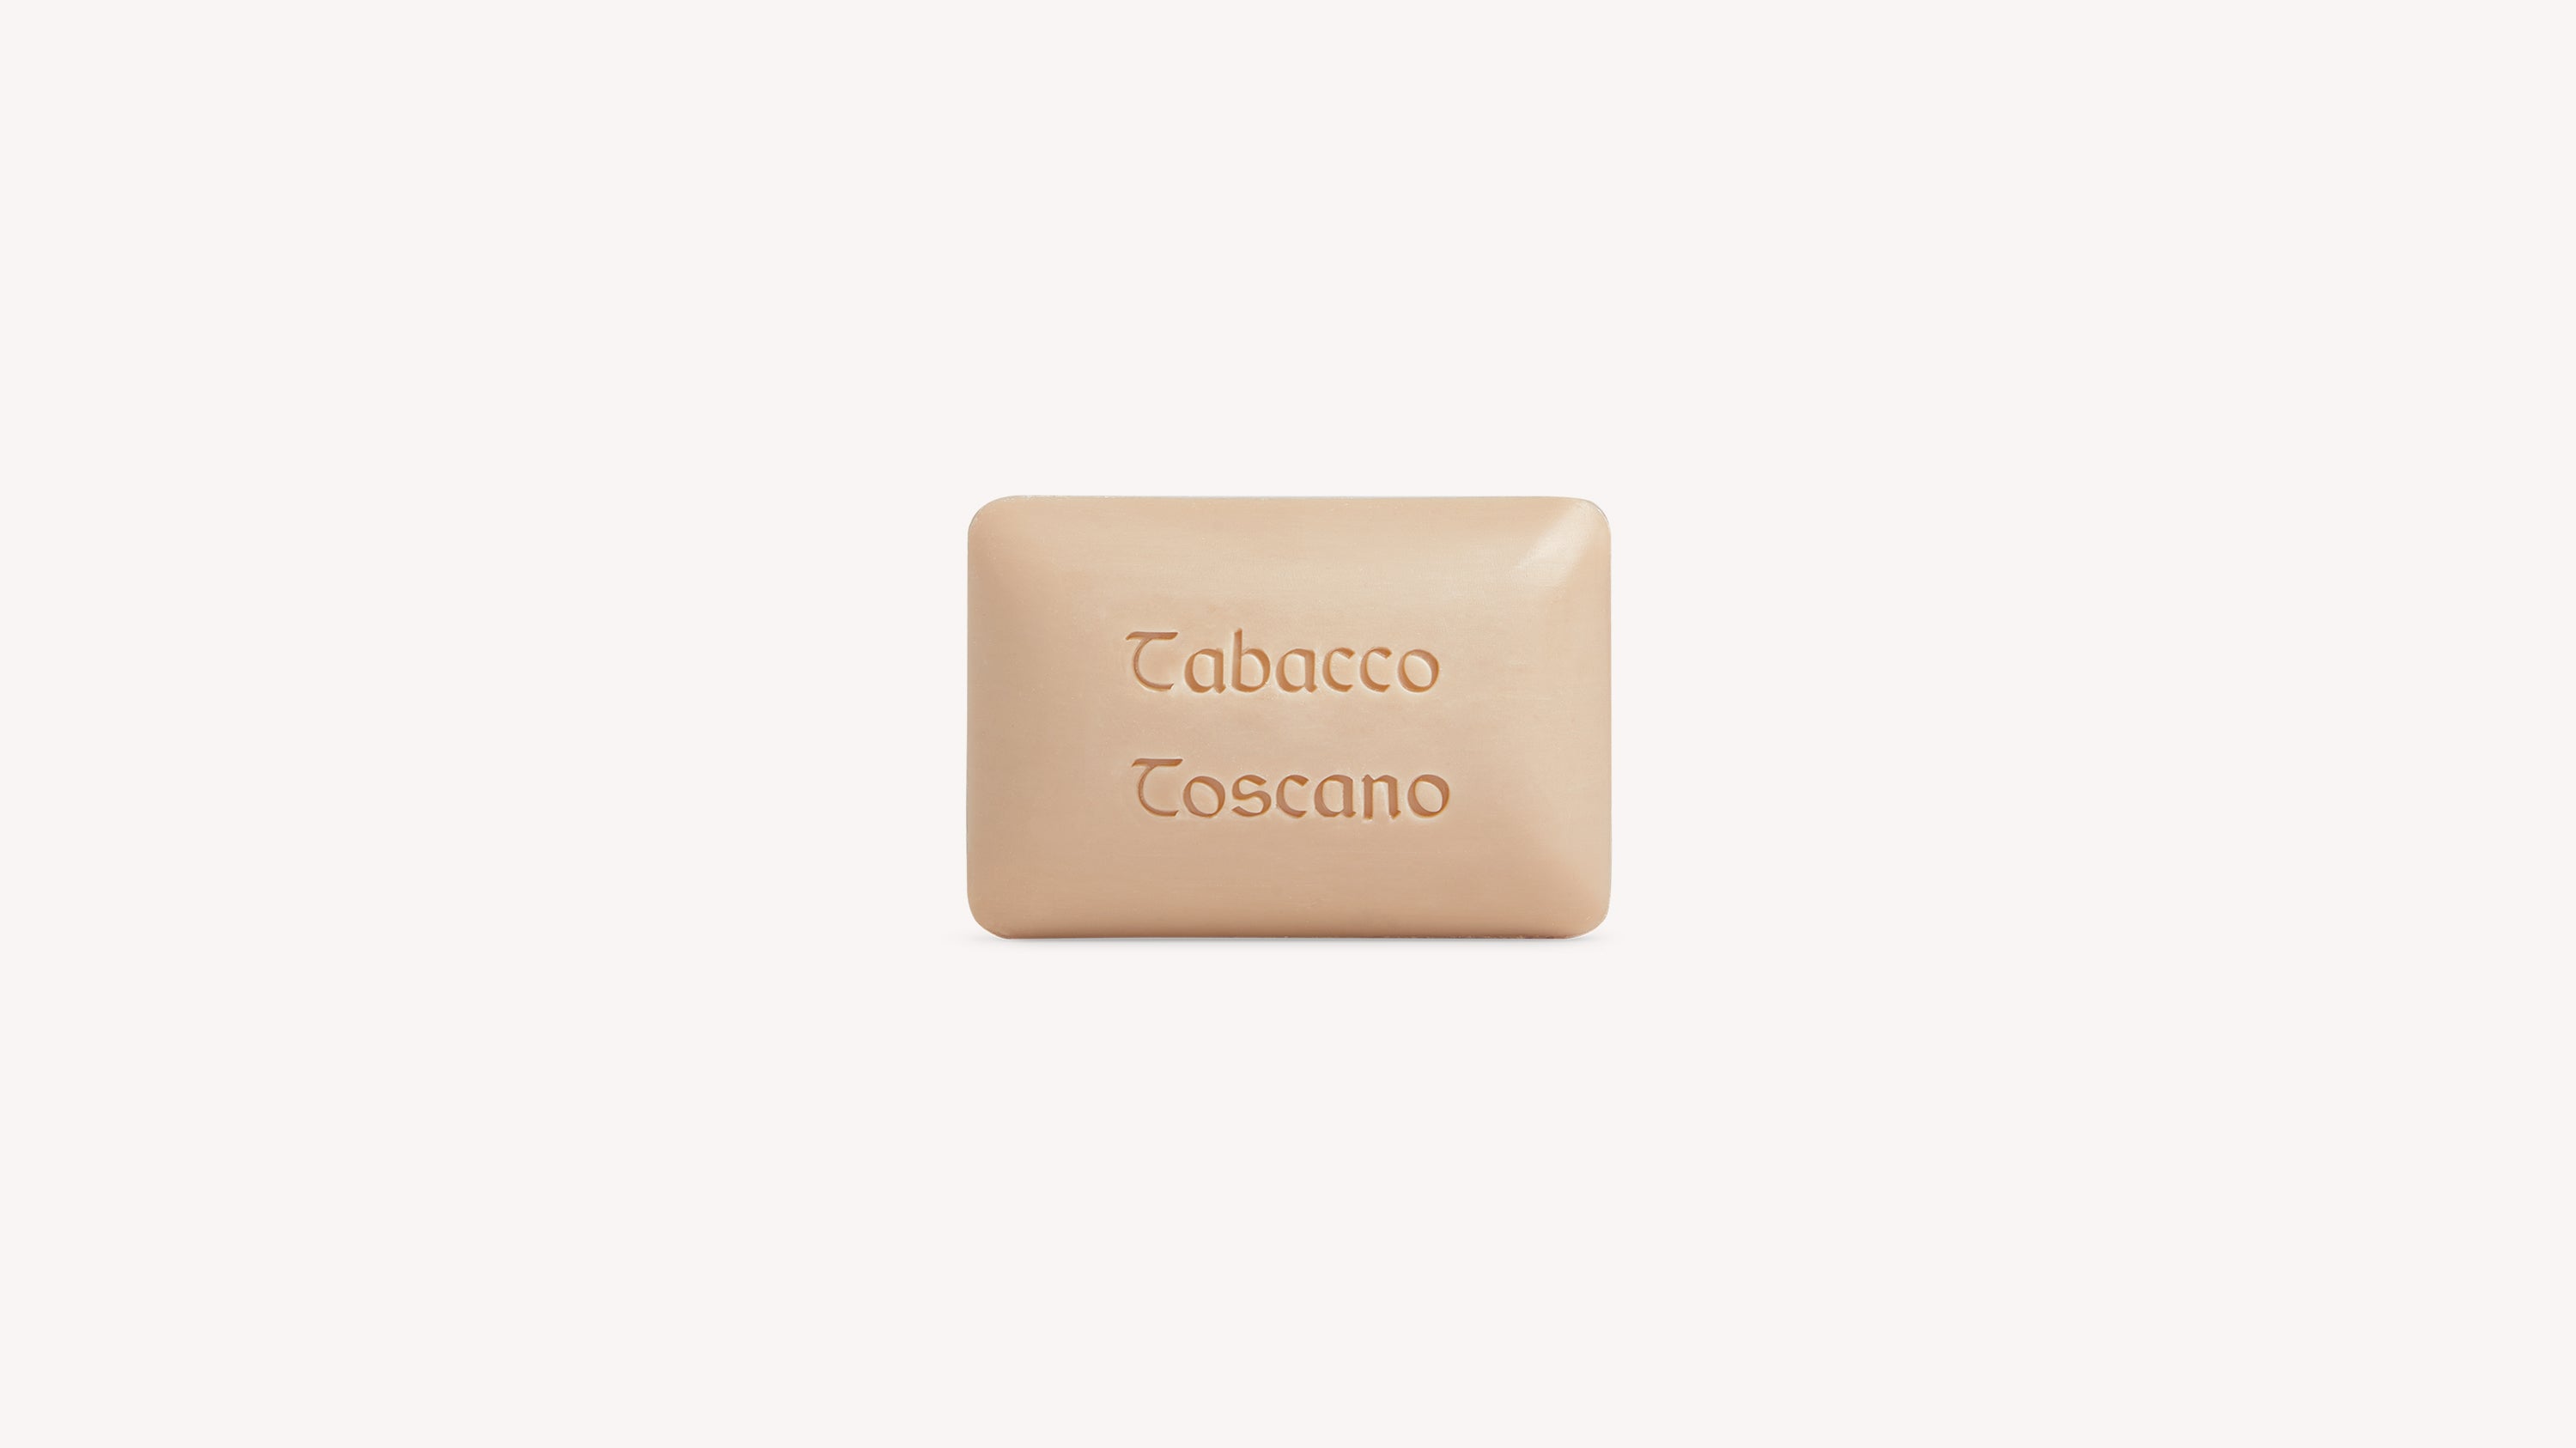 Tabacco Toscano Soap